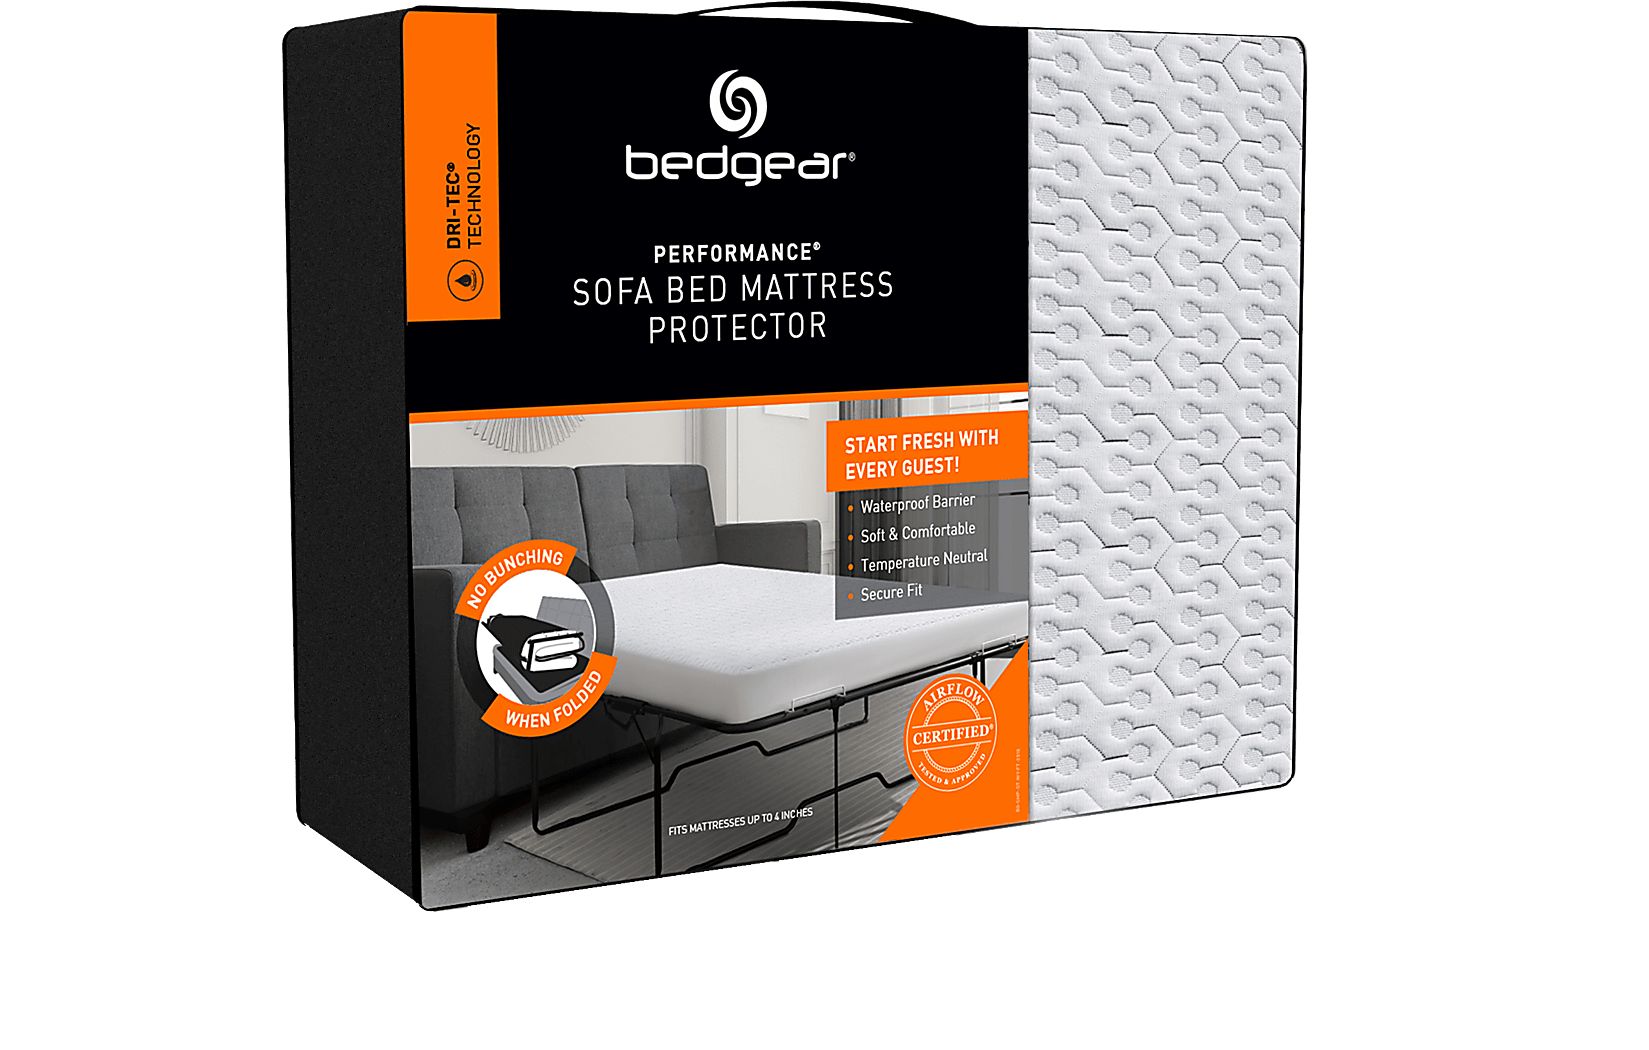 bedgear dri-tec mattress protector care instructions